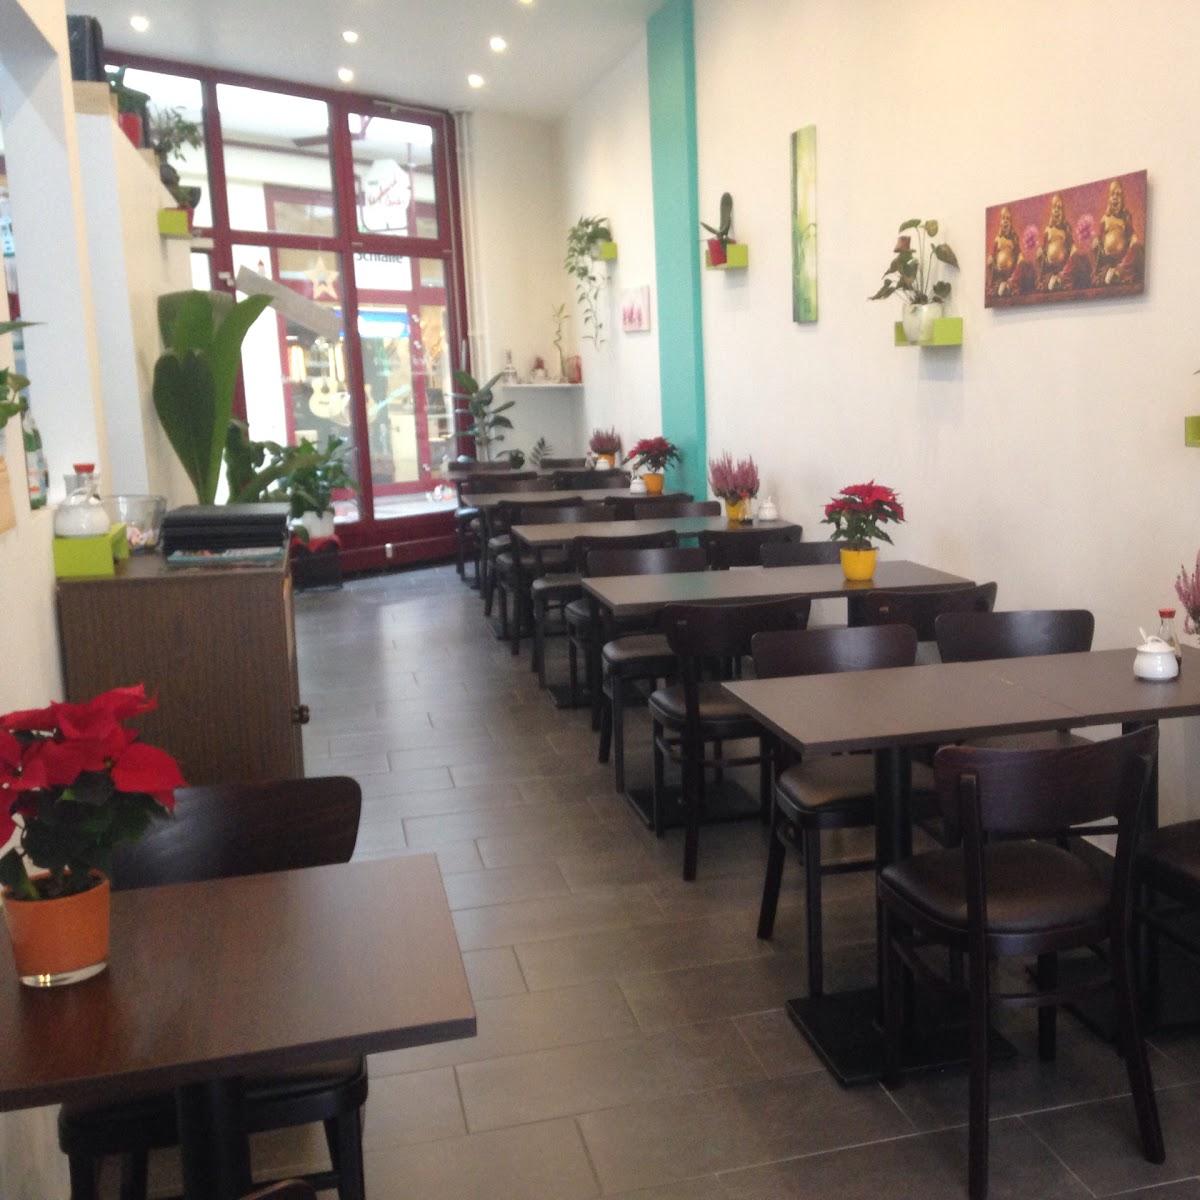 Restaurant "CôCô Diner Vietnam-Asiatische Spezialität" in Rastatt